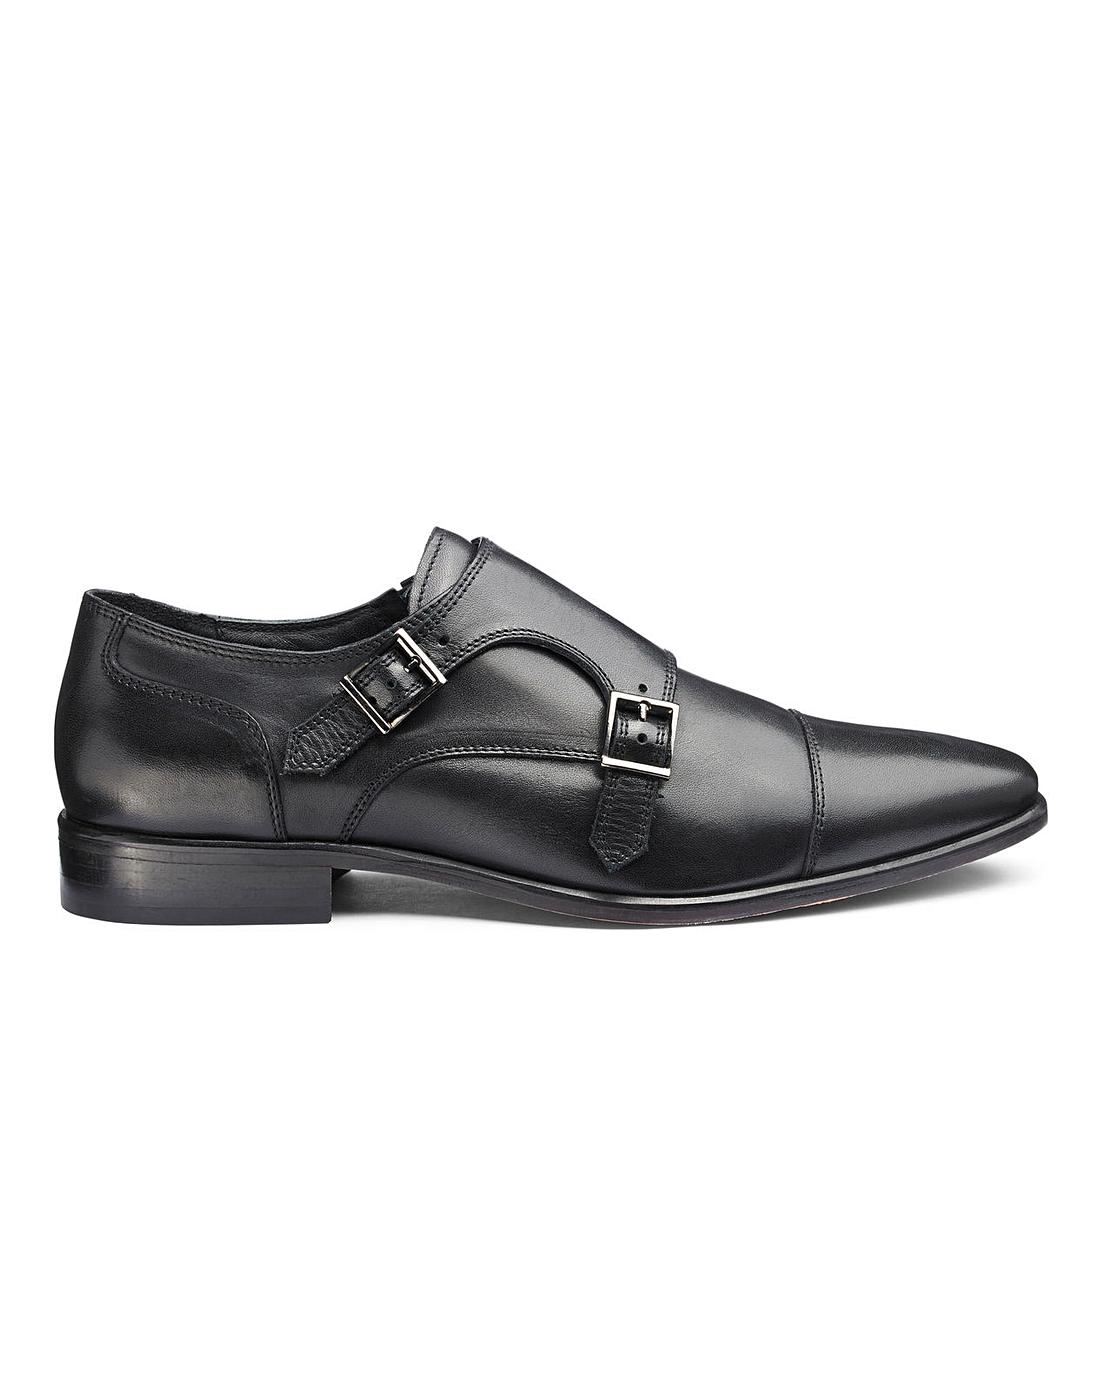 Jacamo Premium Leather Double Monk Shoes | Jacamo